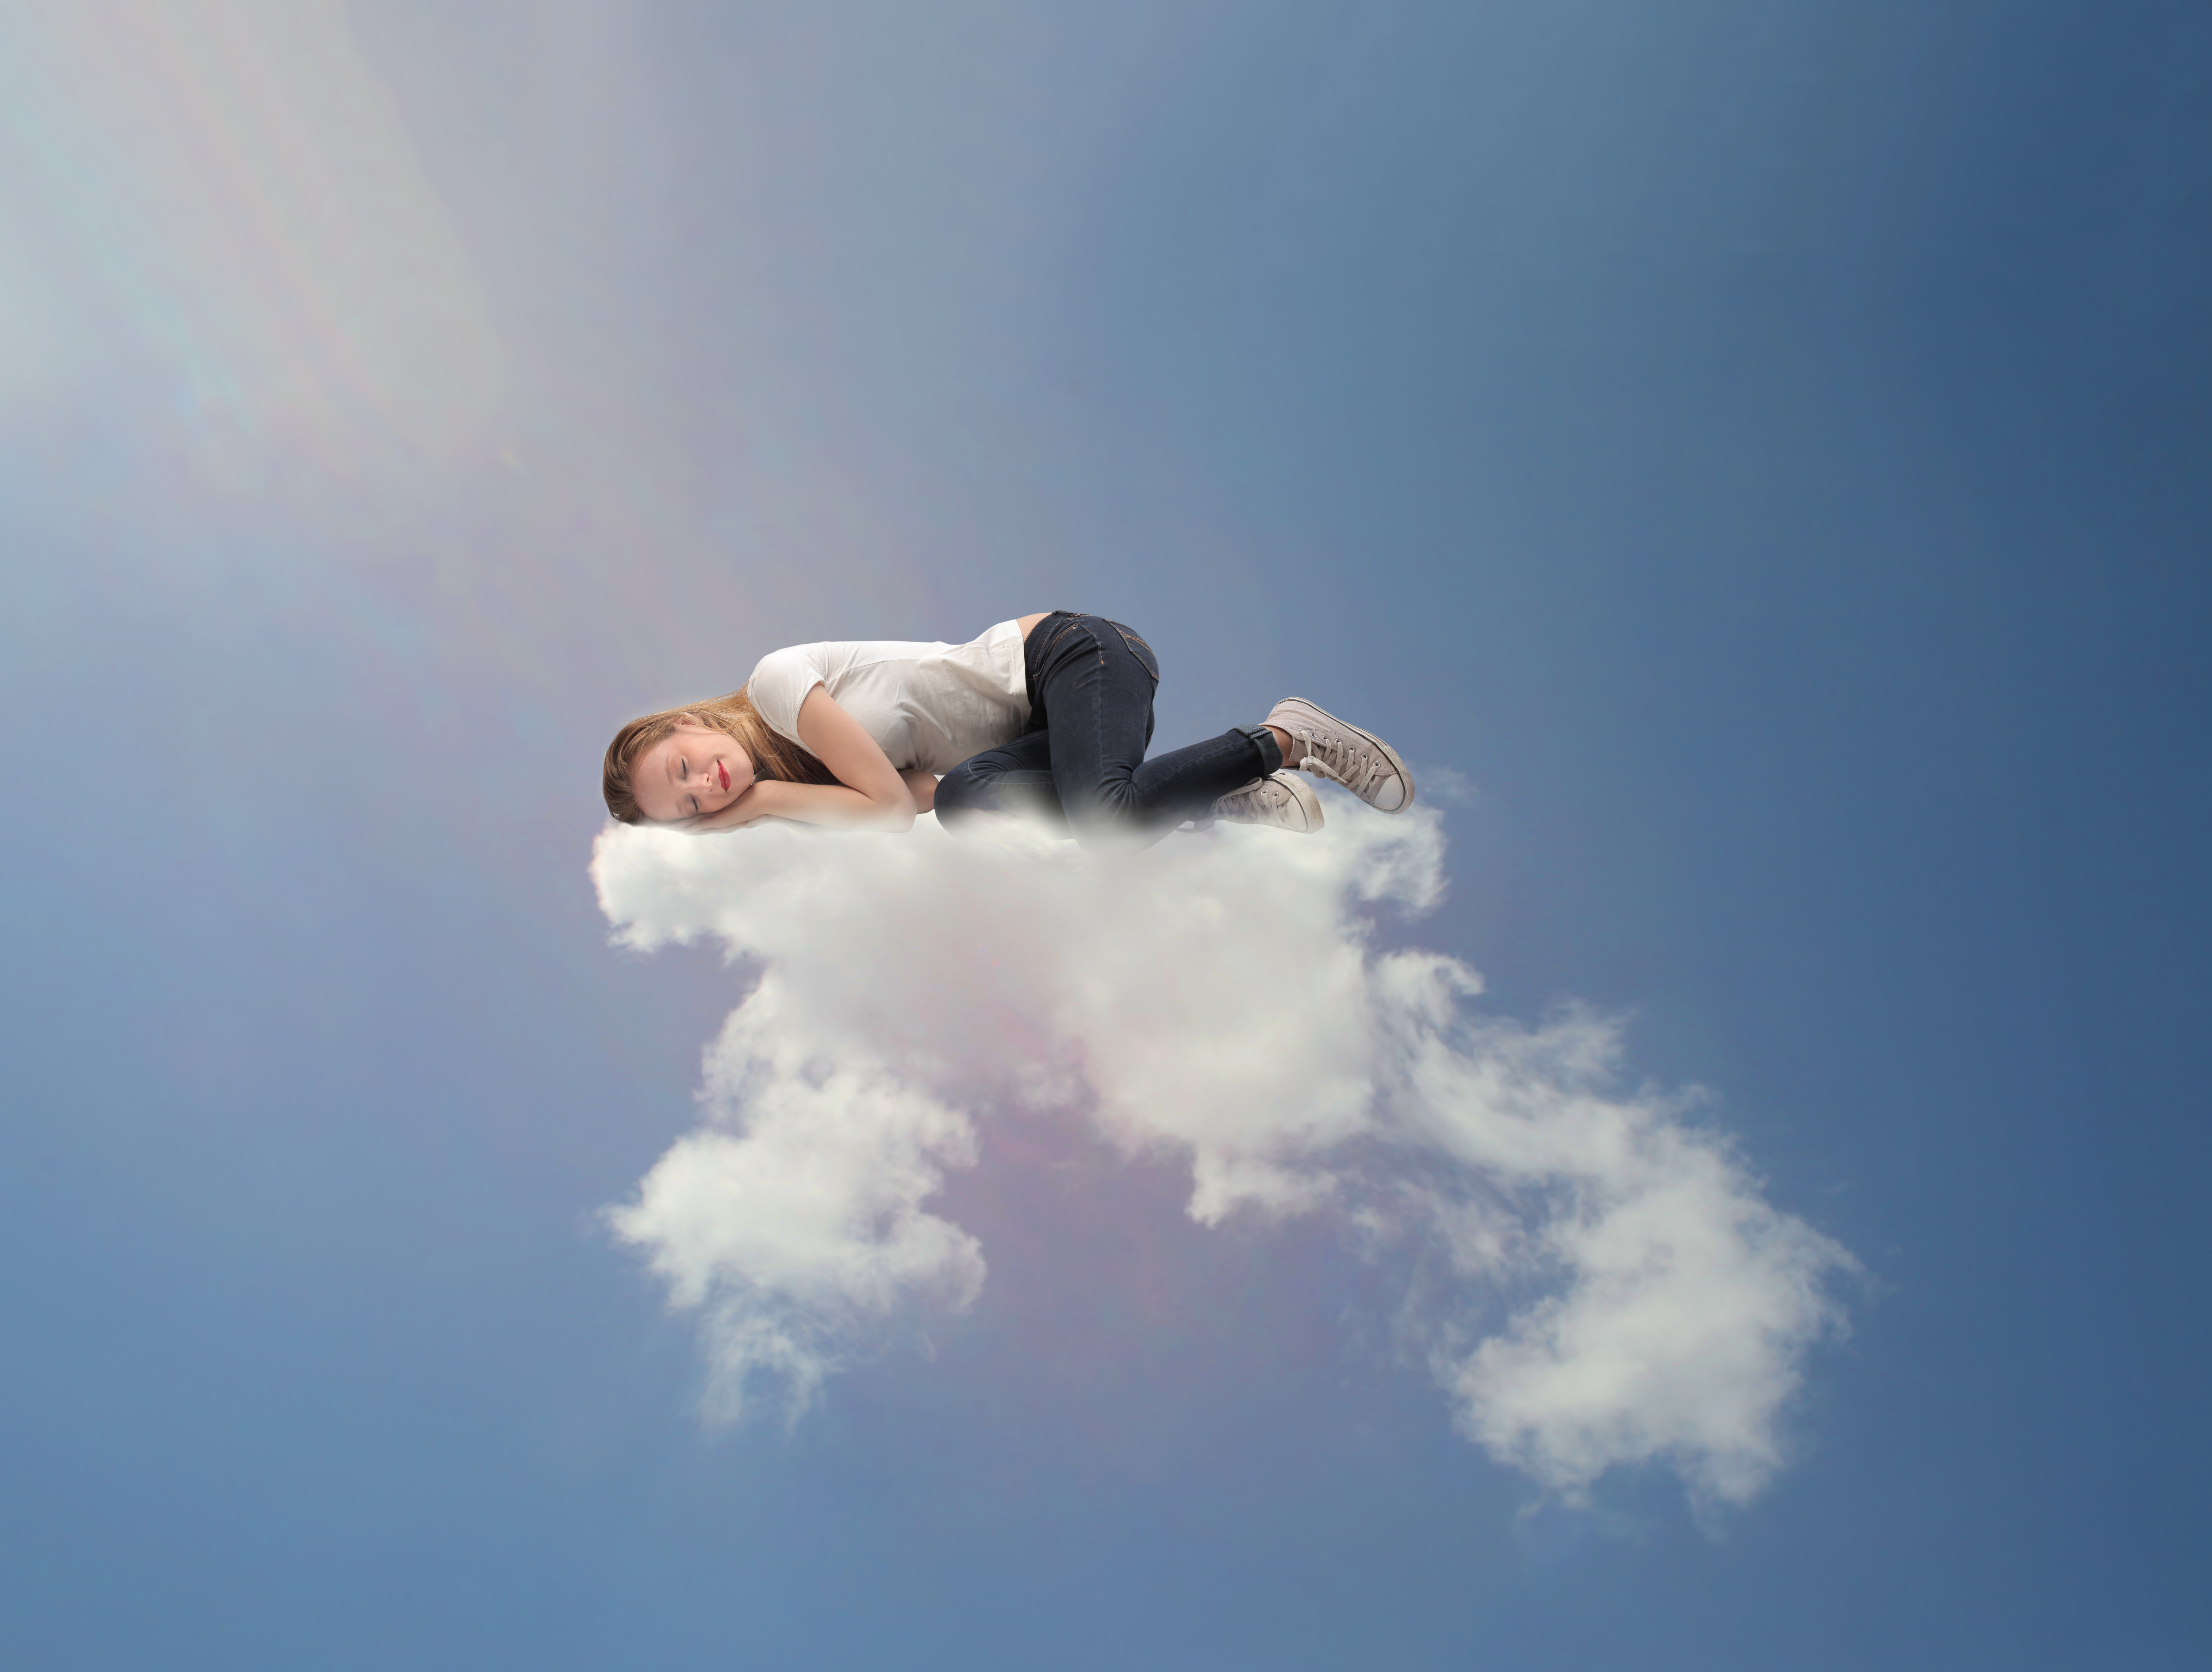 Снятся горы во сне. Человек на облаке. Девушка в облаках. Летать в облаках. Парень в облаках.